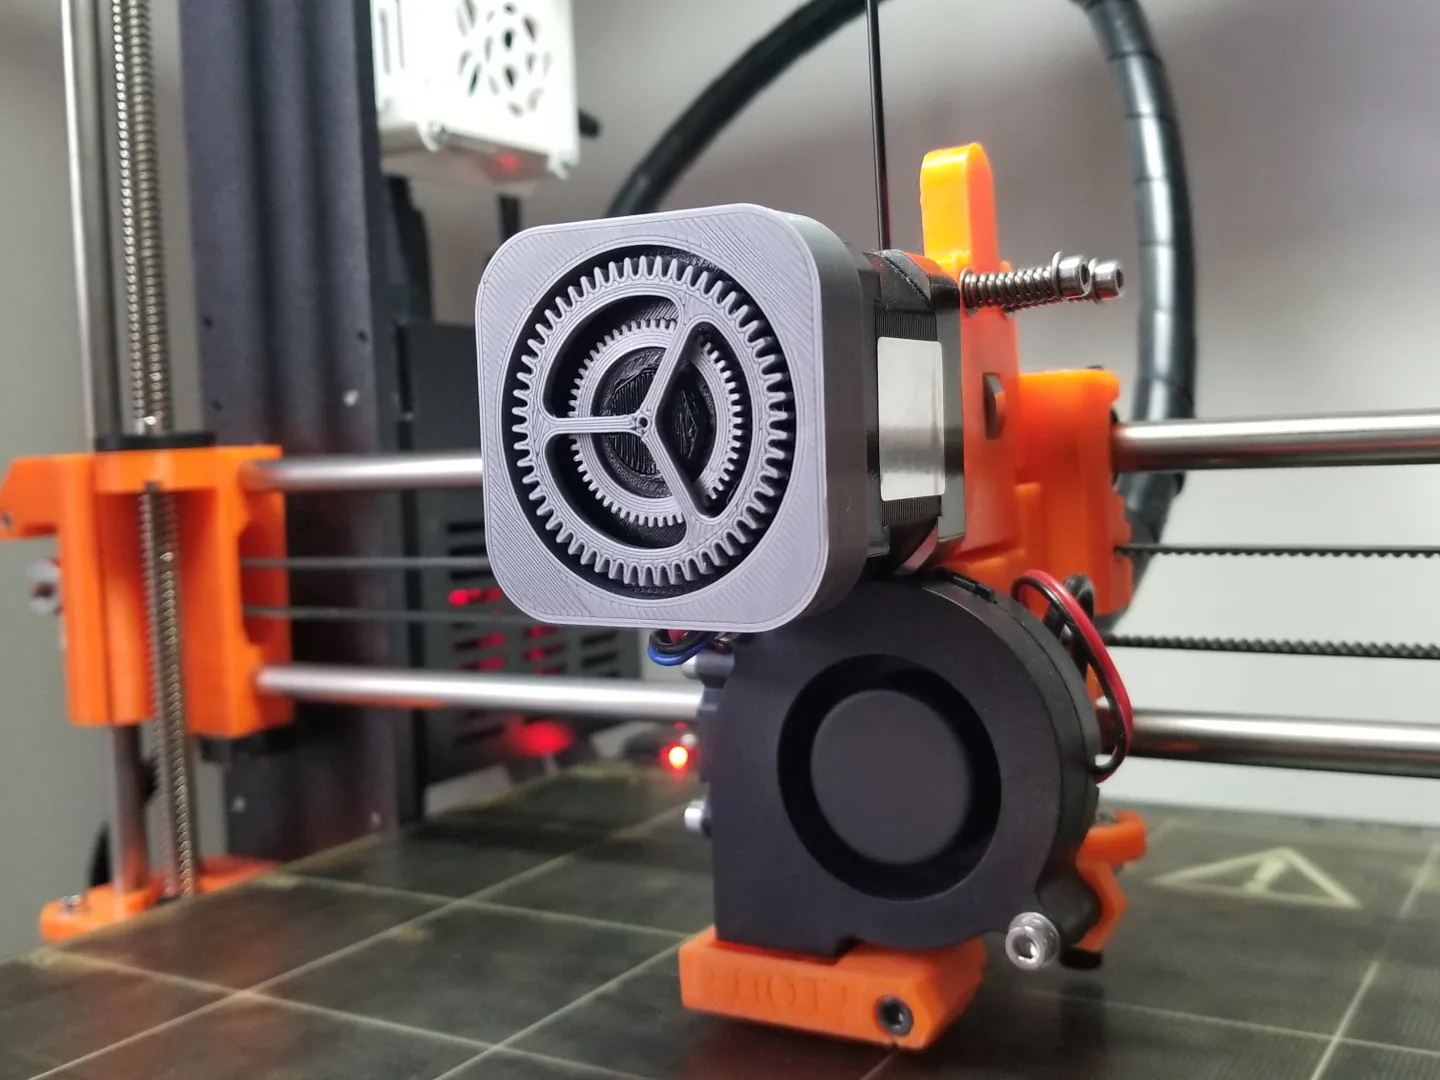 Maqueta de Motor de Cuatro Tiempos en Impresión 3D ⚙️ Recuerda que c